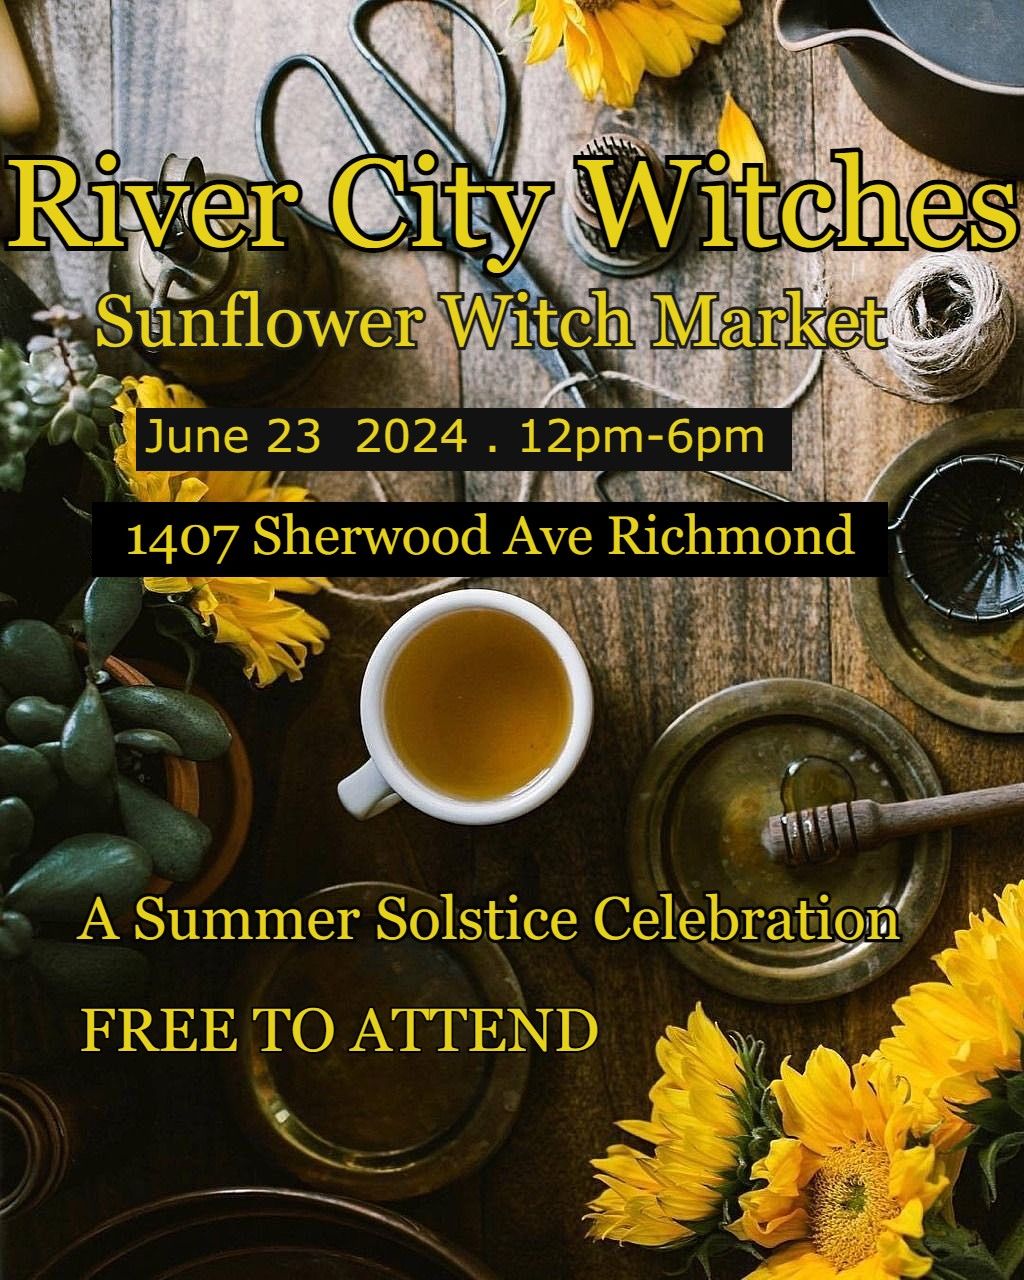 Sunflower Witch Market